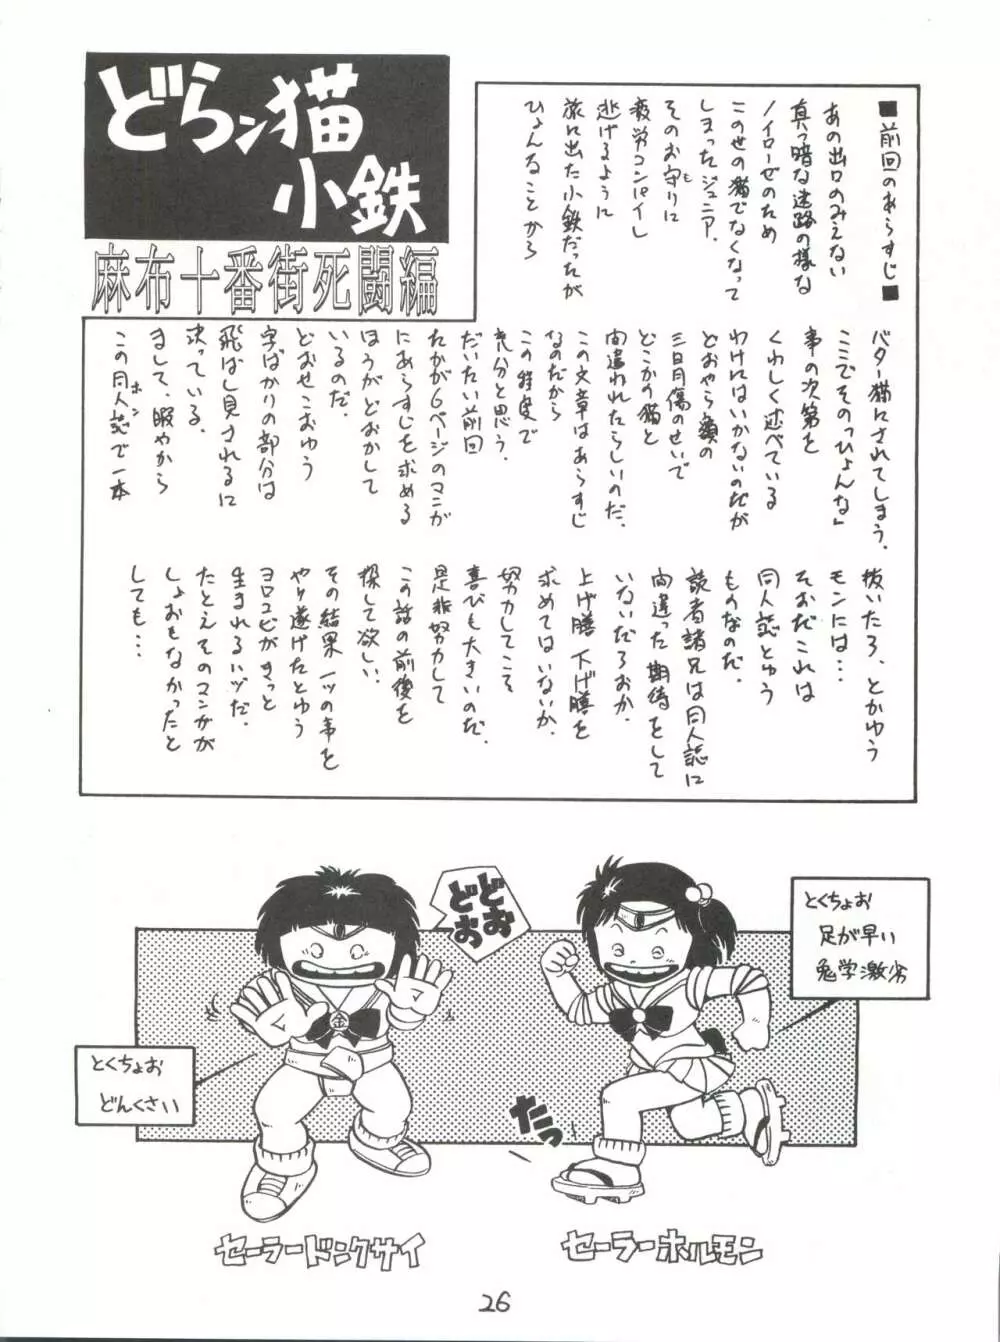 腹腹時計 Vol. II “YADAMON” 26ページ